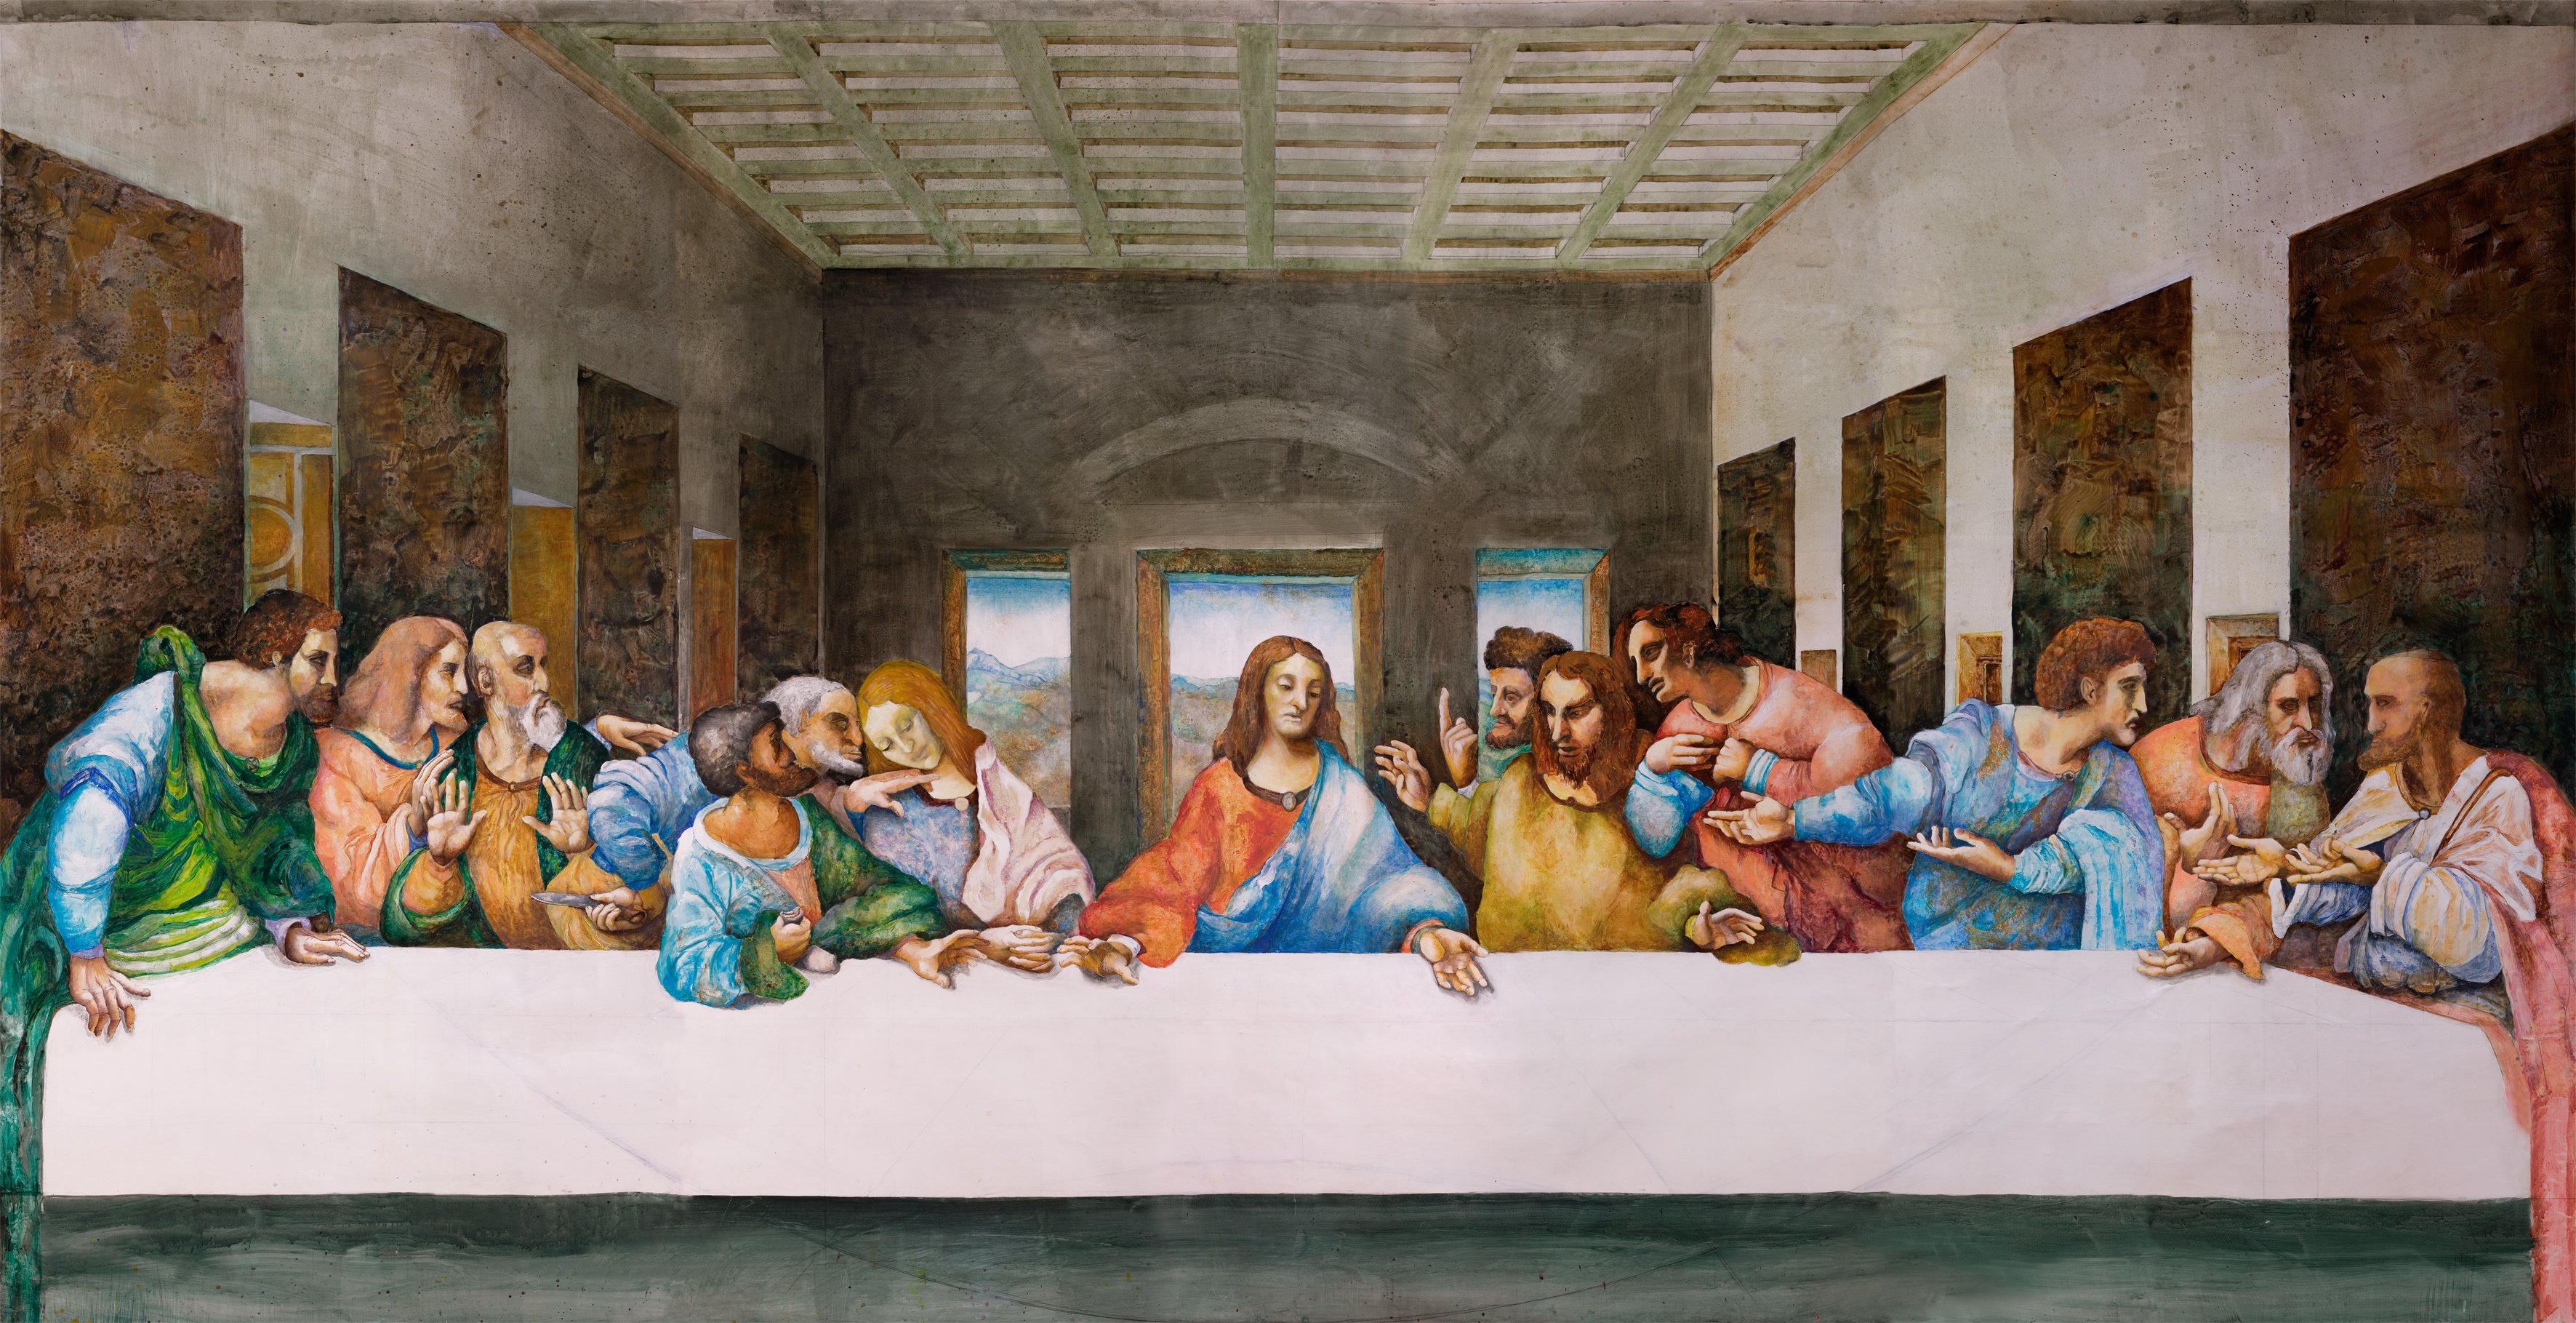 Тайное вечере сюжет. Тайная вечеря (1498), Леонардо да Винчи. Картина Тайная вечеря Леонардо Давинчи. Фреска Тайная вечеря Леонардо да Винчи. Картина да Винчи 12 апостолов.